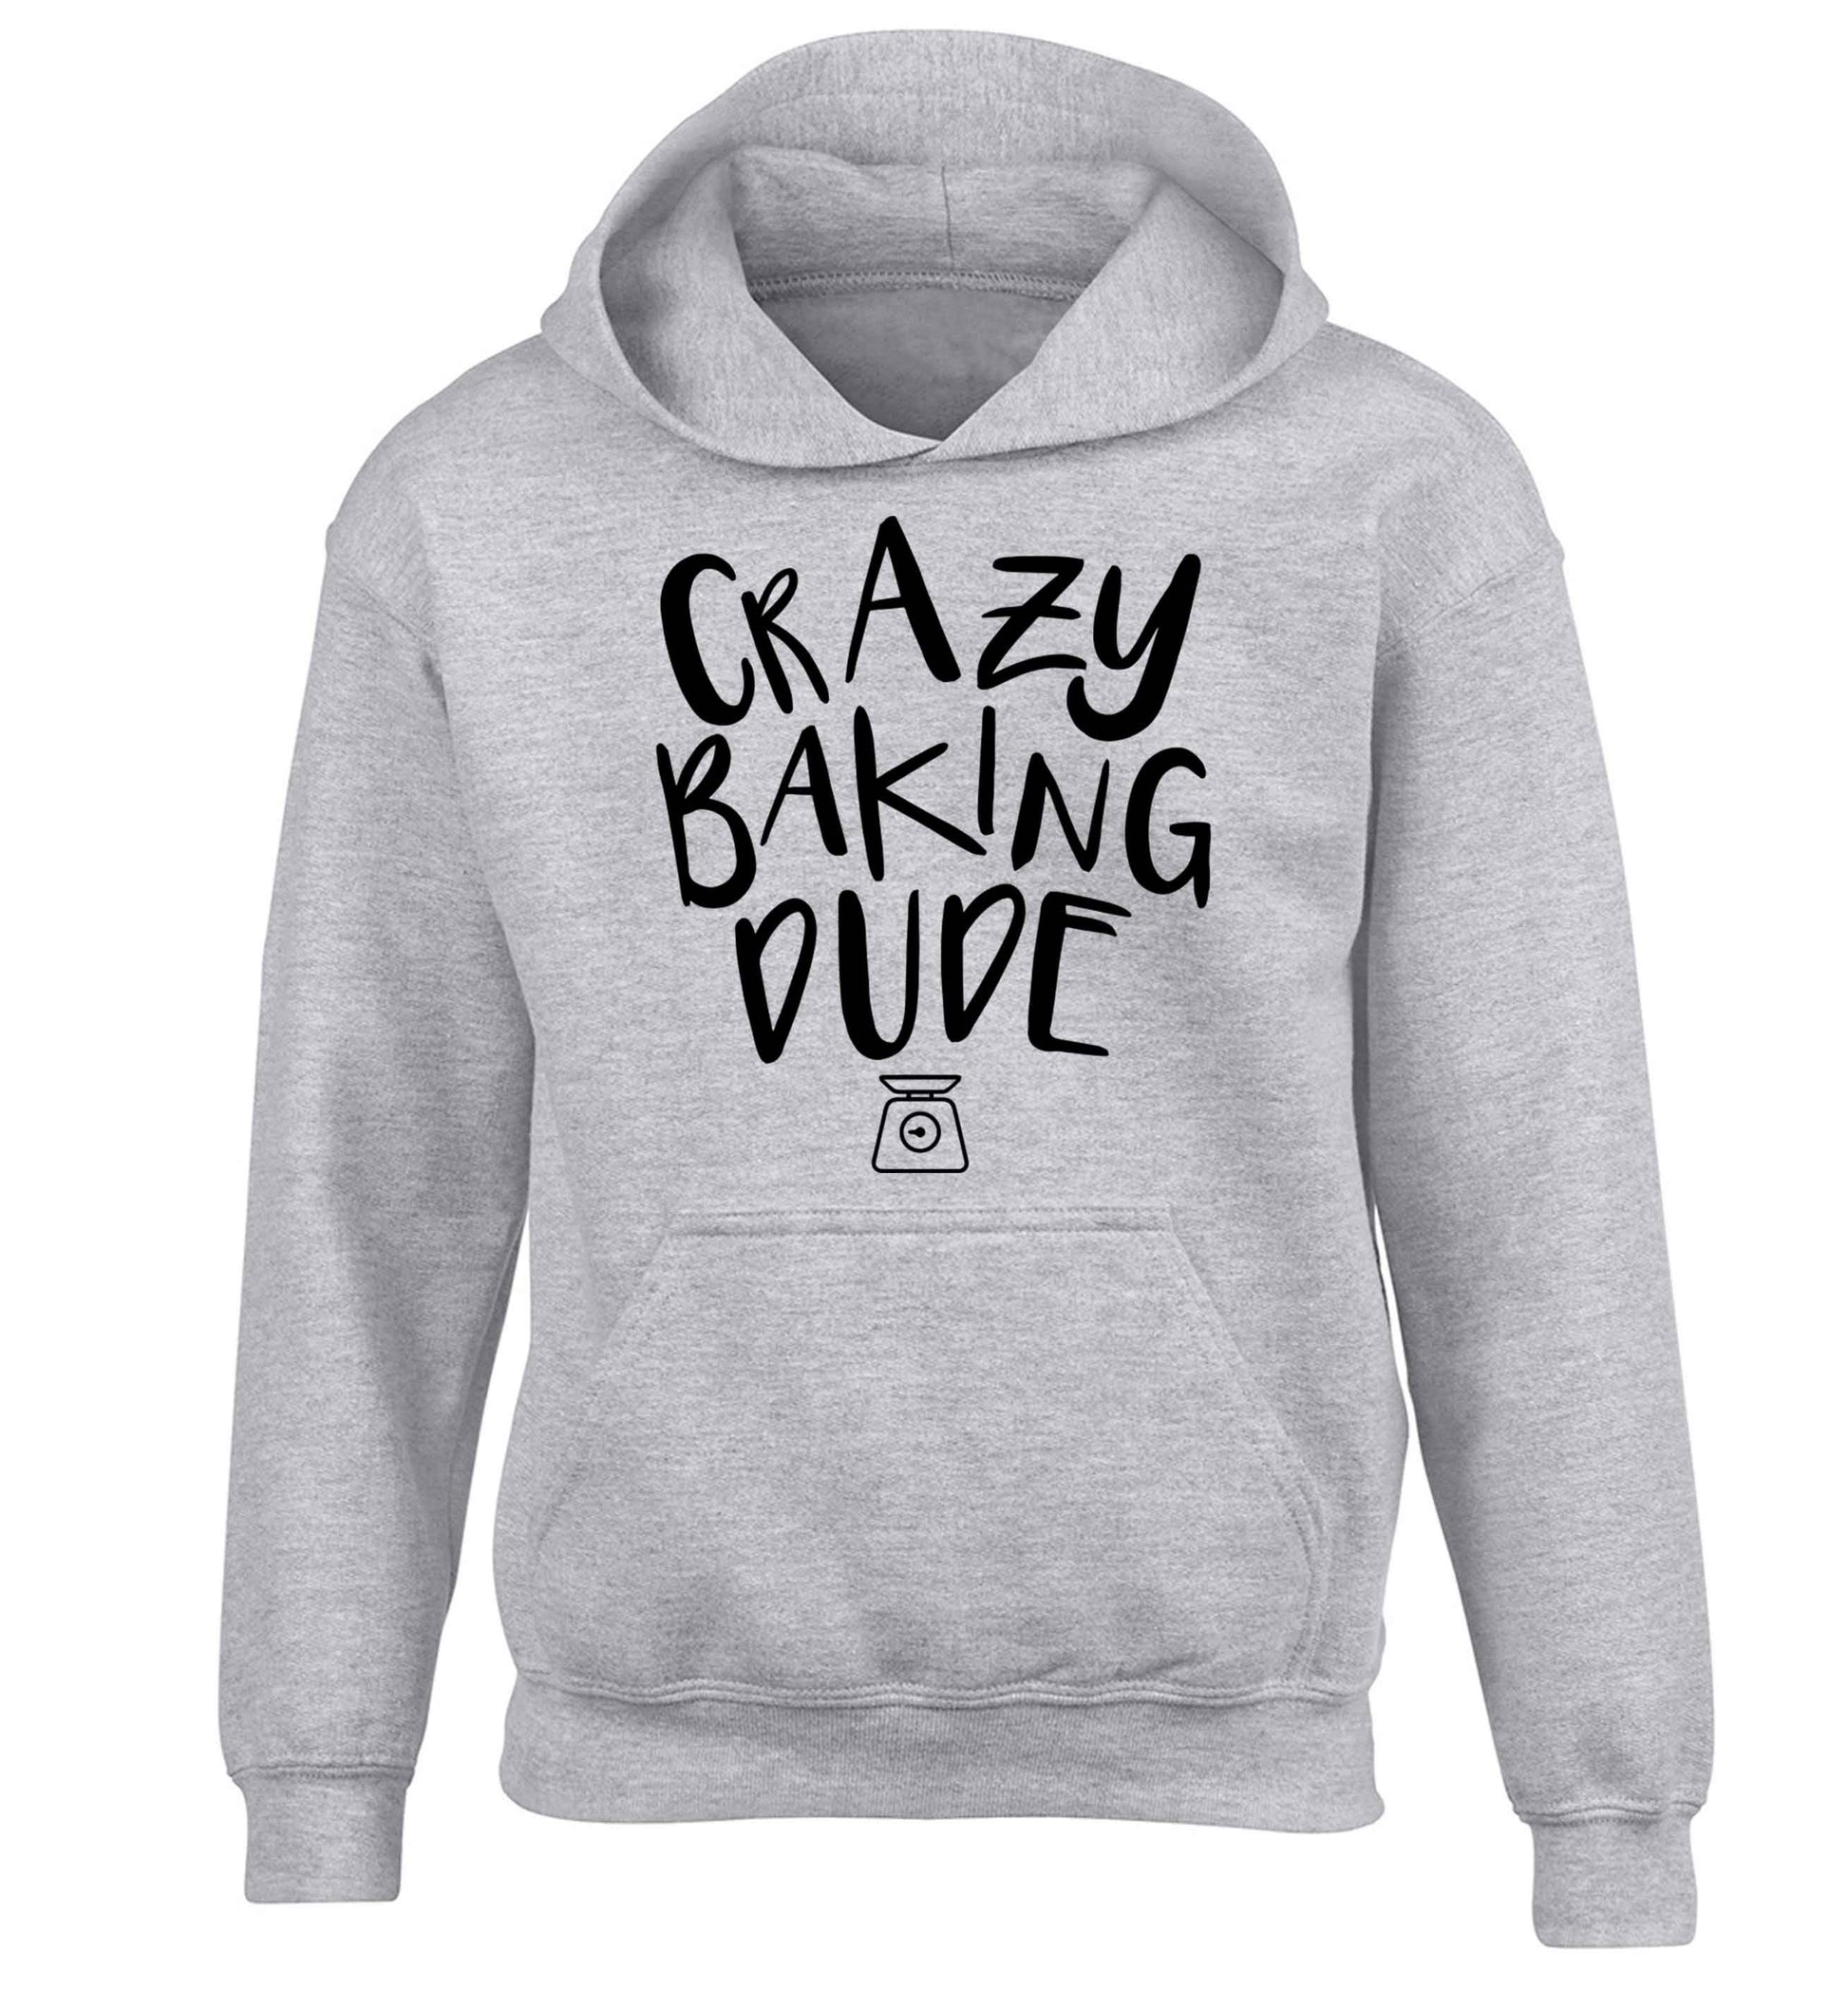 Crazy baking dude children's grey hoodie 12-13 Years